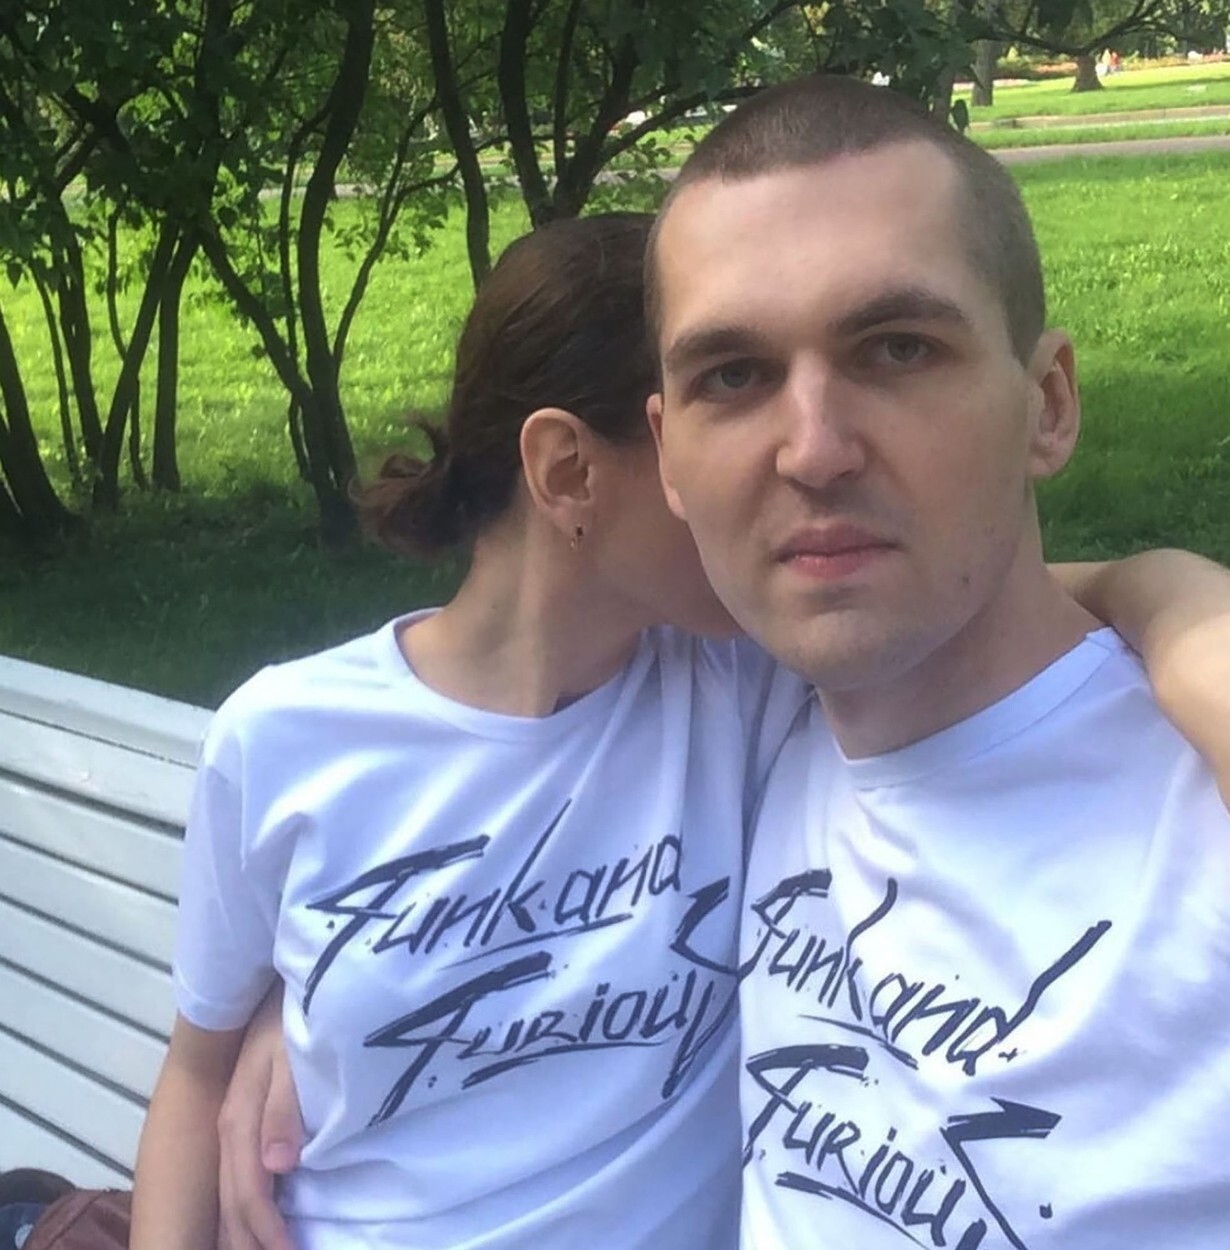 Soția unu rapper rus i-ar fi tranșat trupul cât timp acesta era în viață. Detalii șocante descoperite de anchetatori